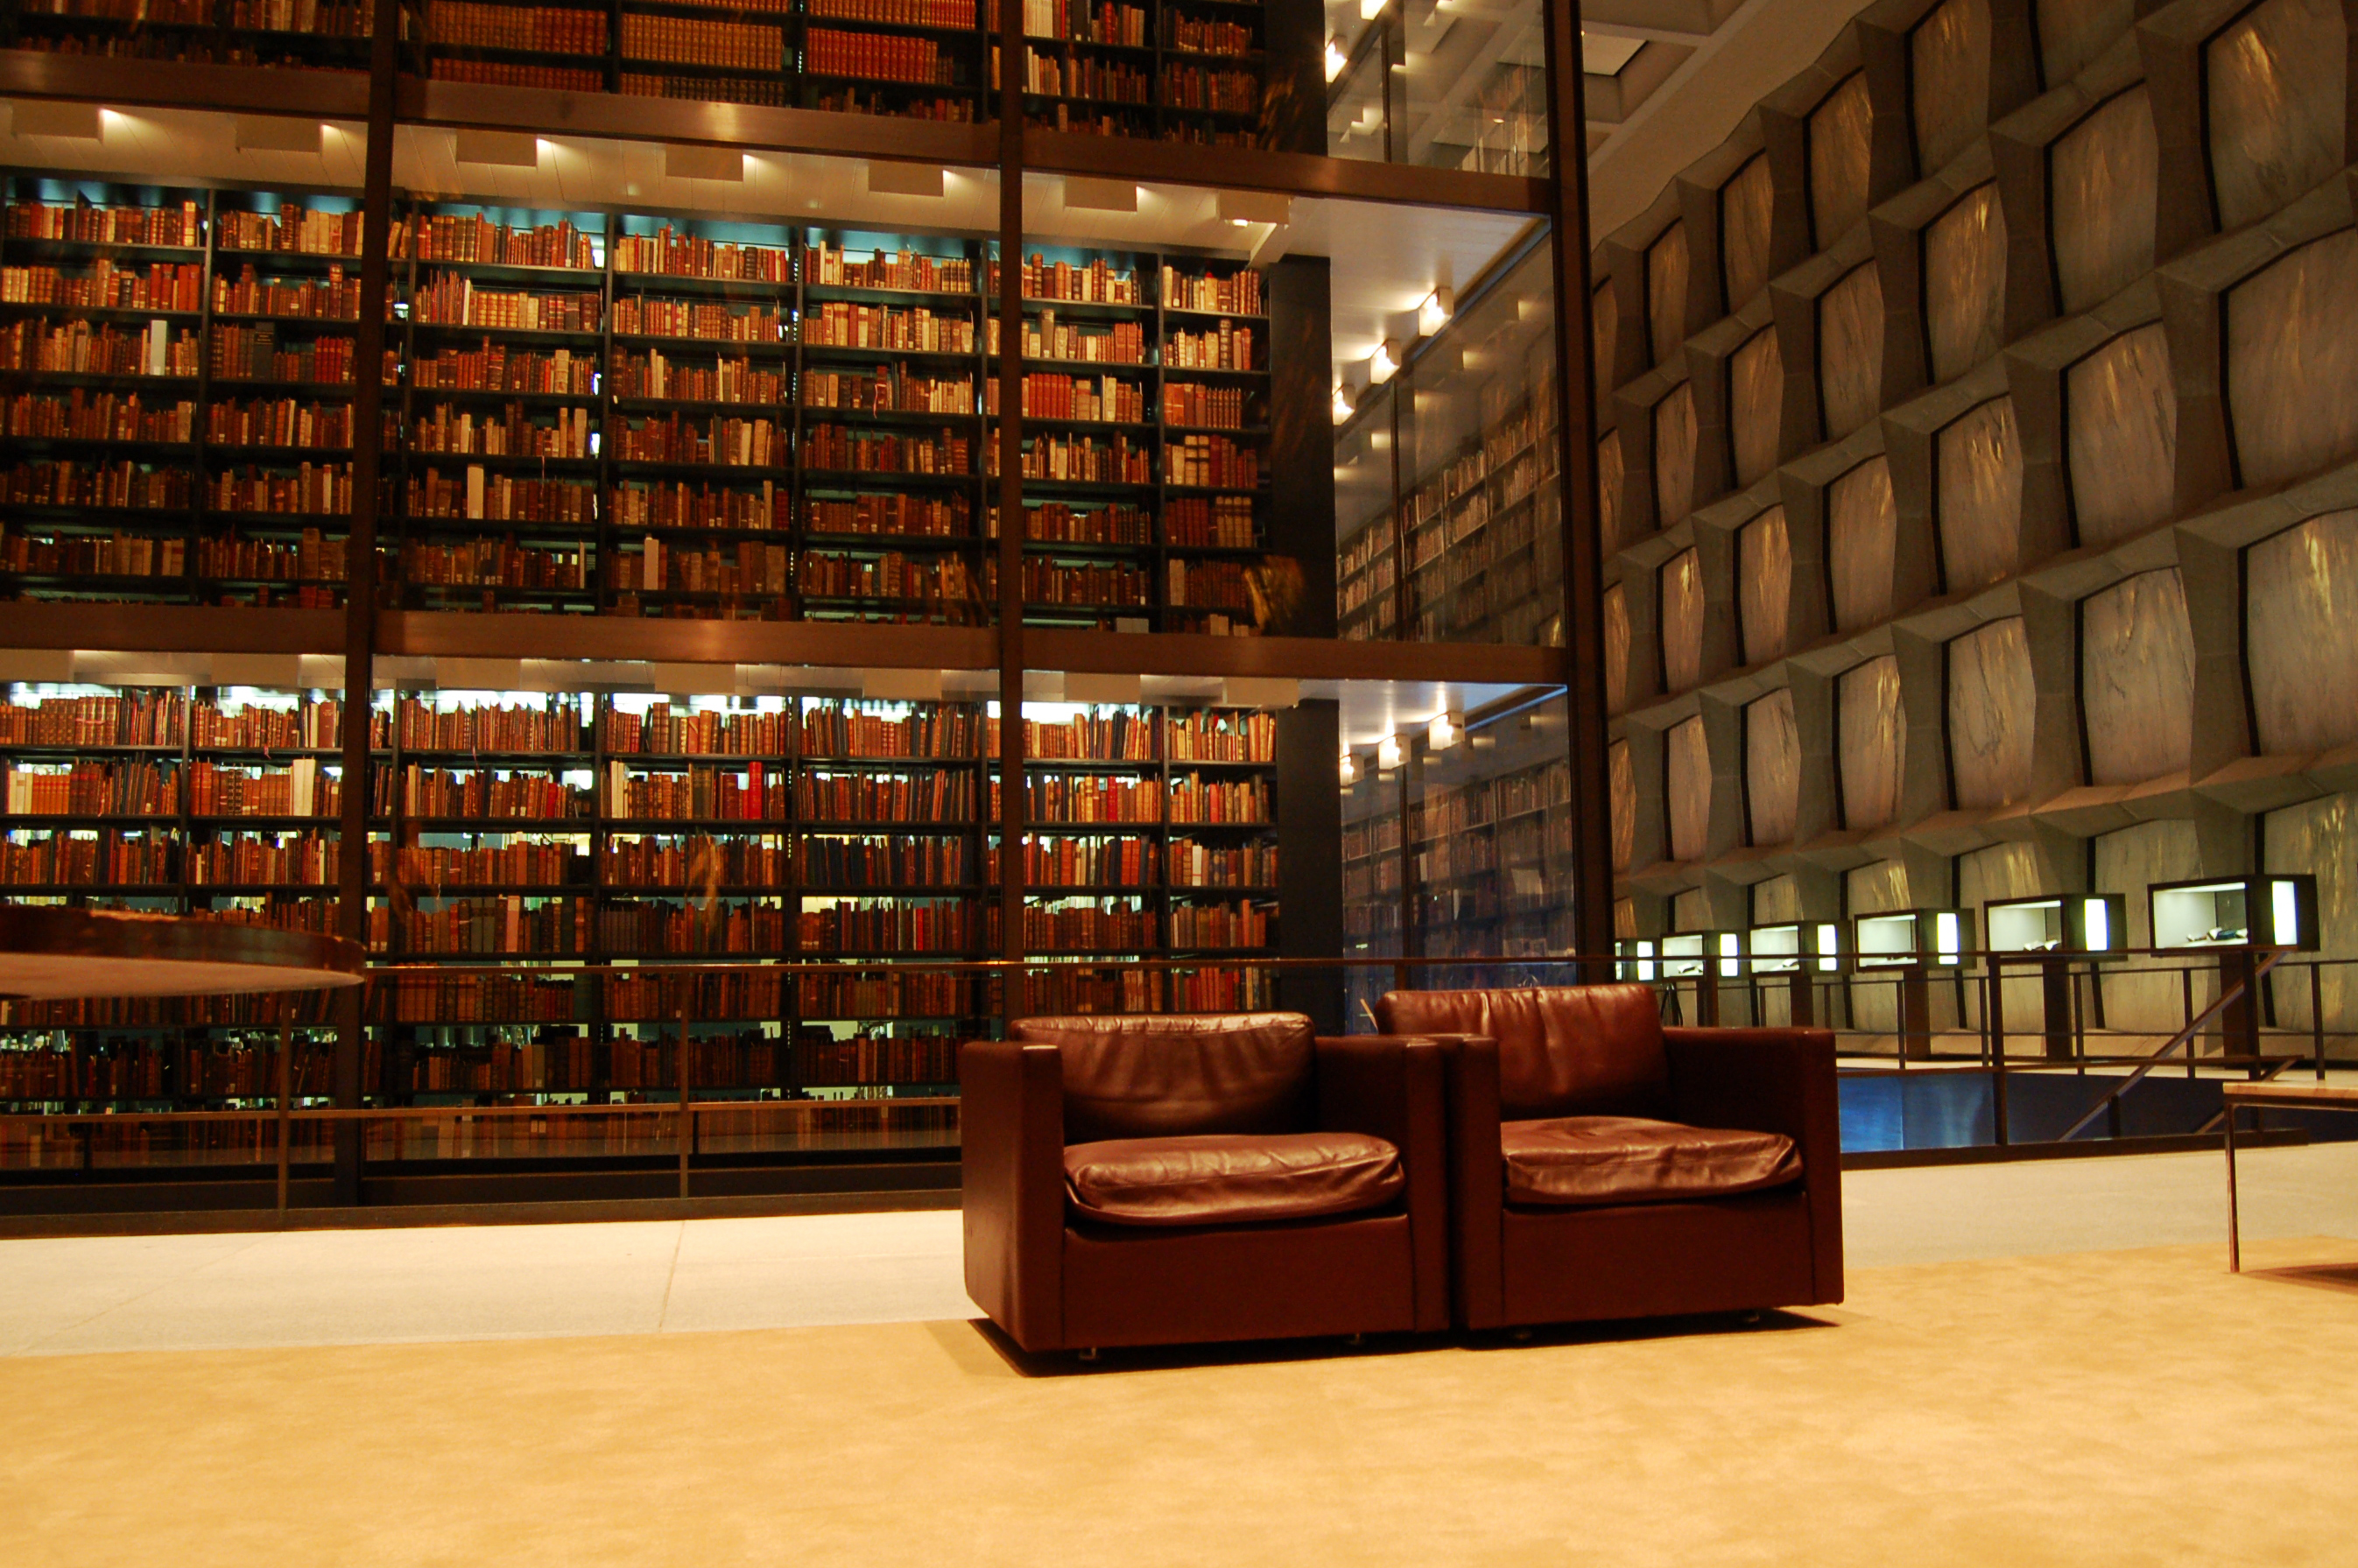 Библ библиотека. Йельский университет библиотека. Библиотека Бейнеке в Йельском университете. Королевская библиотека Дании. Библиотека Бейнеке в Йельском университете (1963).